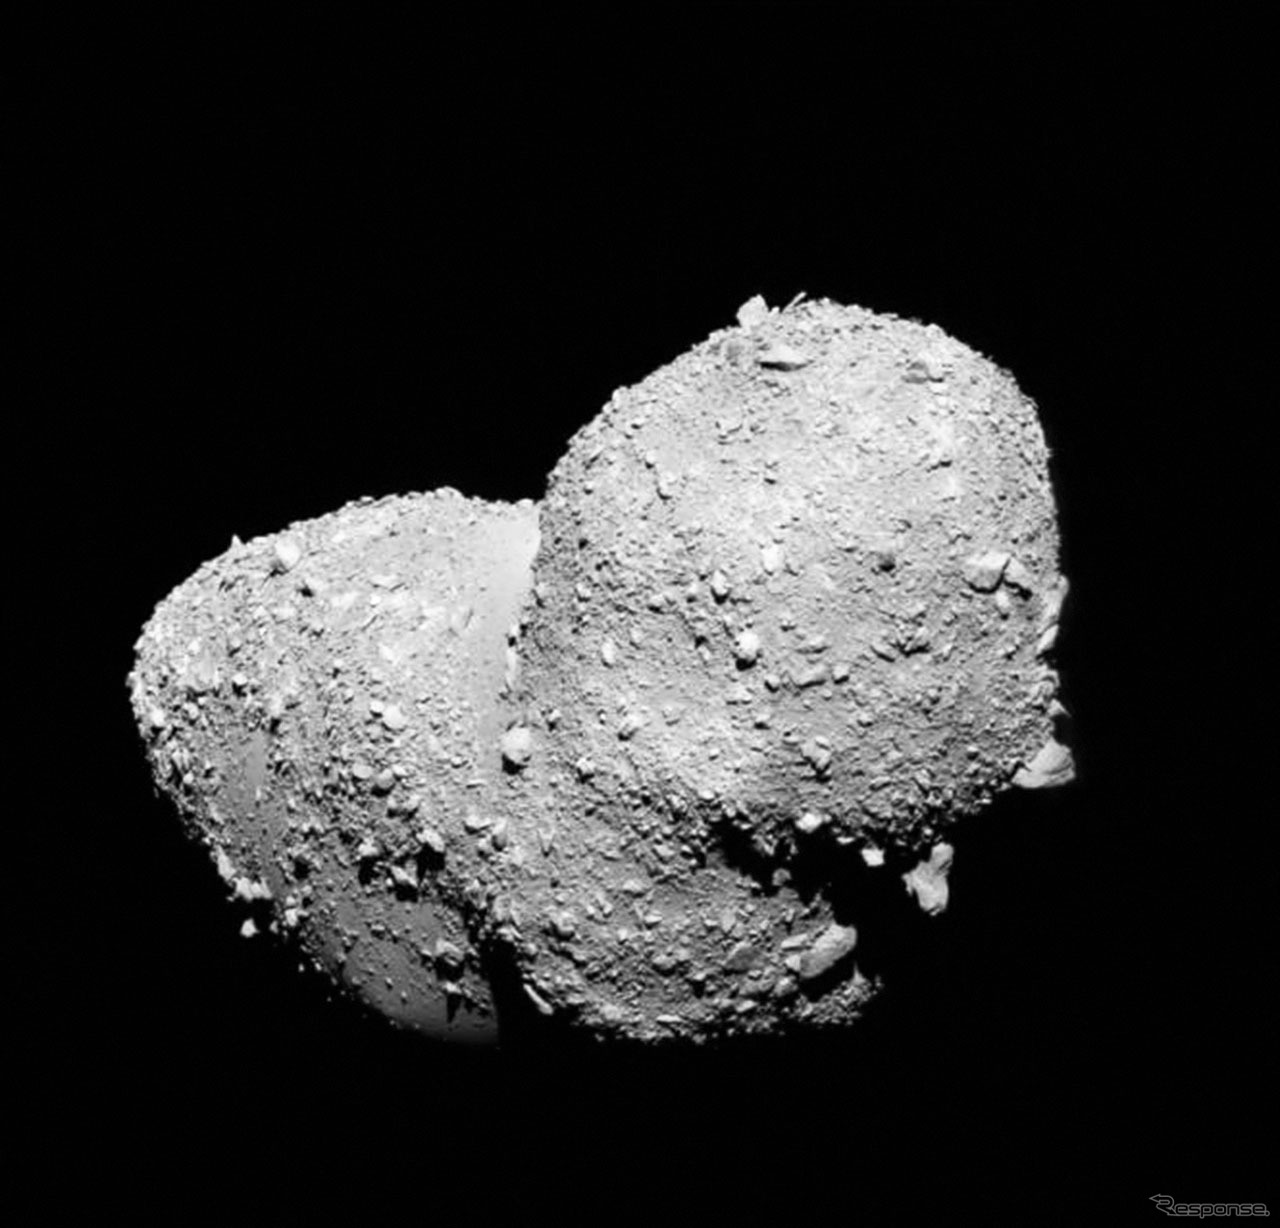 「はやぶさ」が観測した小惑星イトカワ